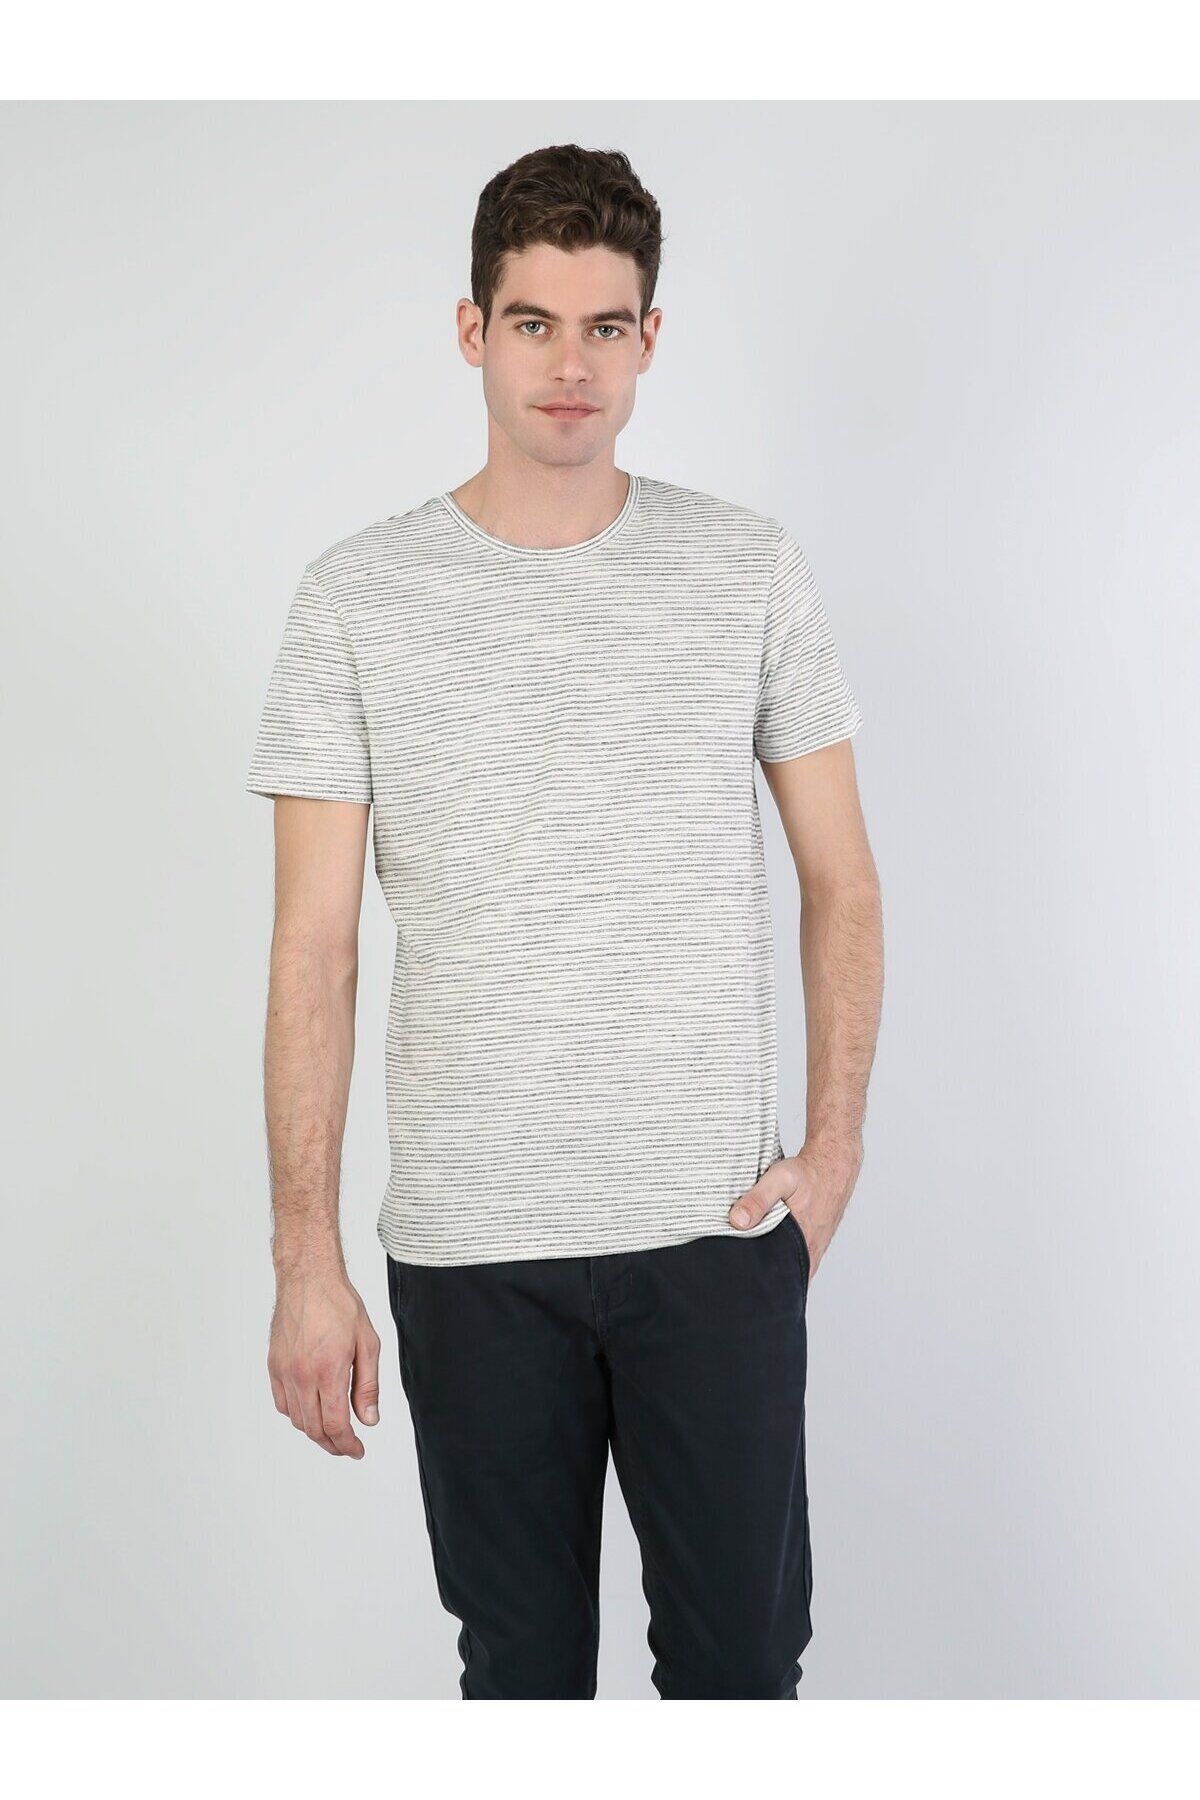 Colin’s تی شرت آستین کوتاه مردانه یقه بافتنی با تناسب معمولی